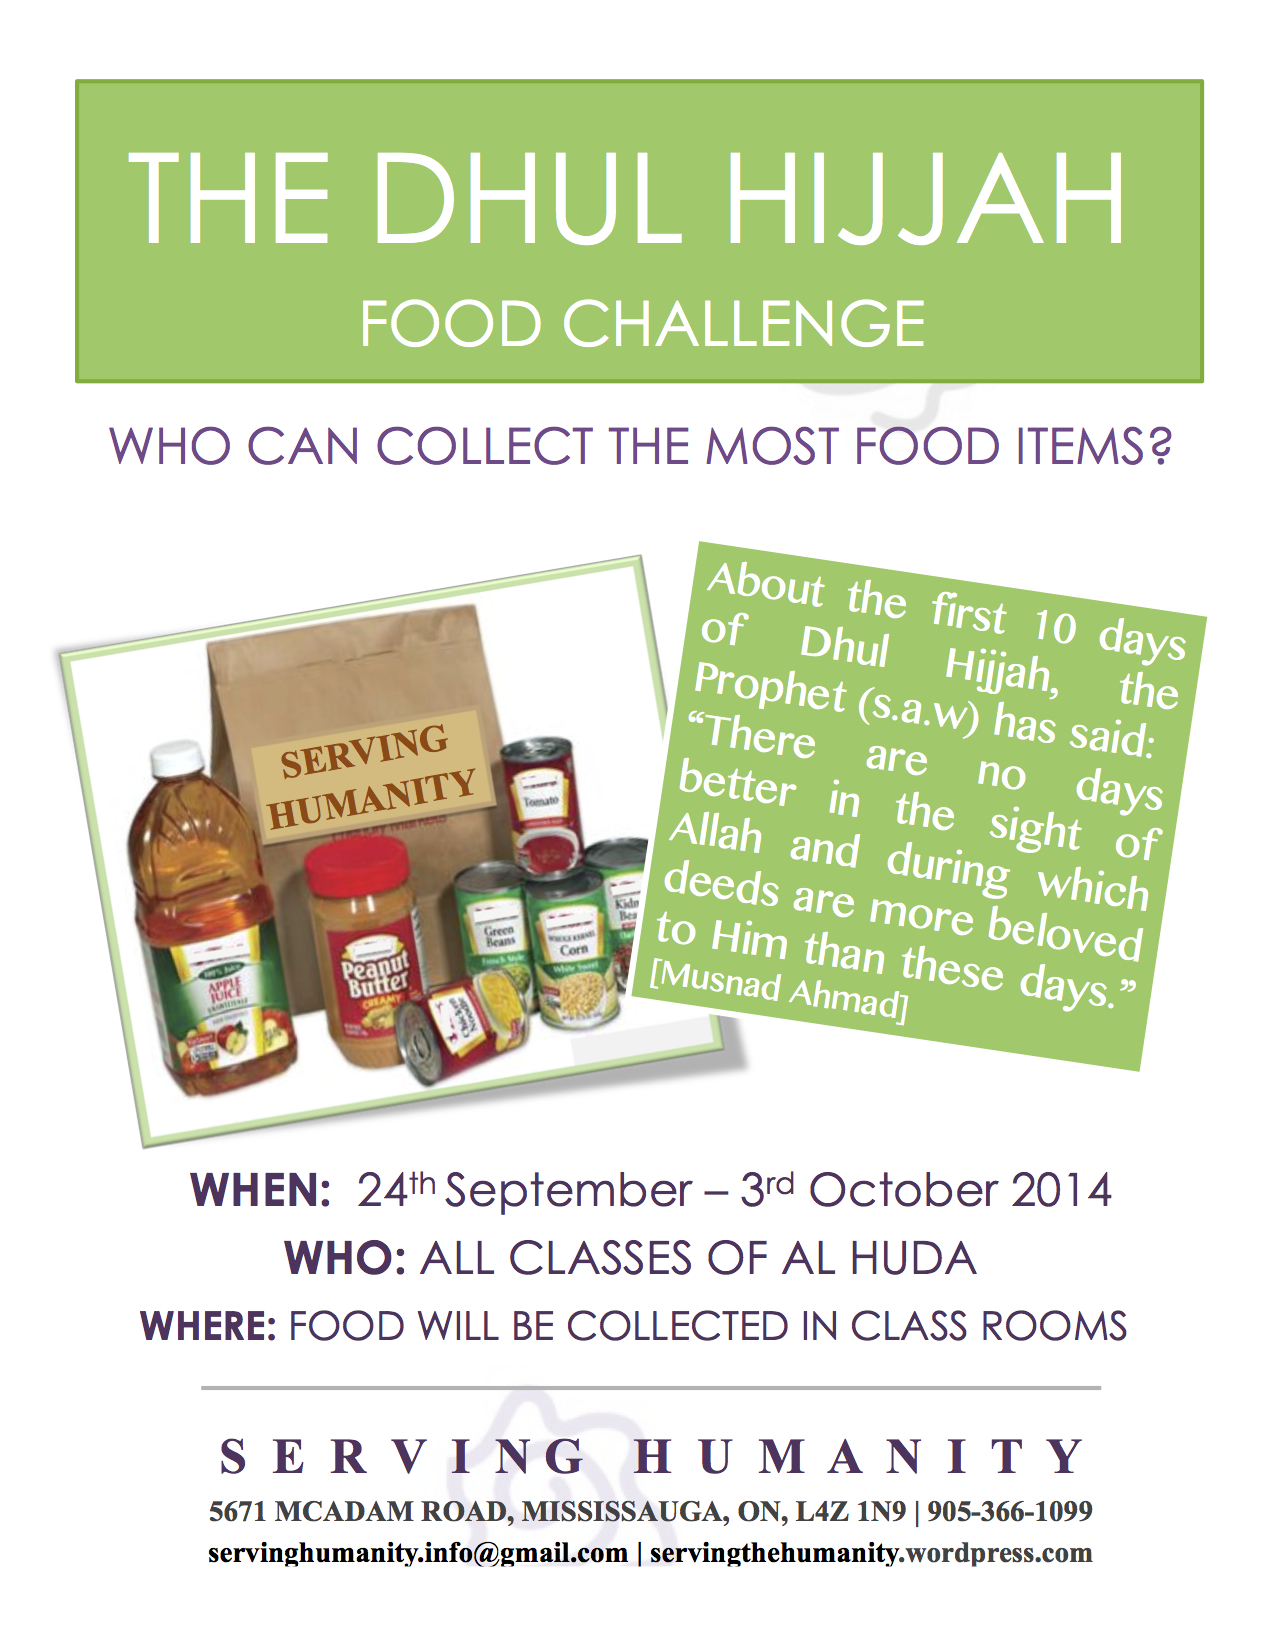 Dhul Hijjah Food Challenge Flyer 2014